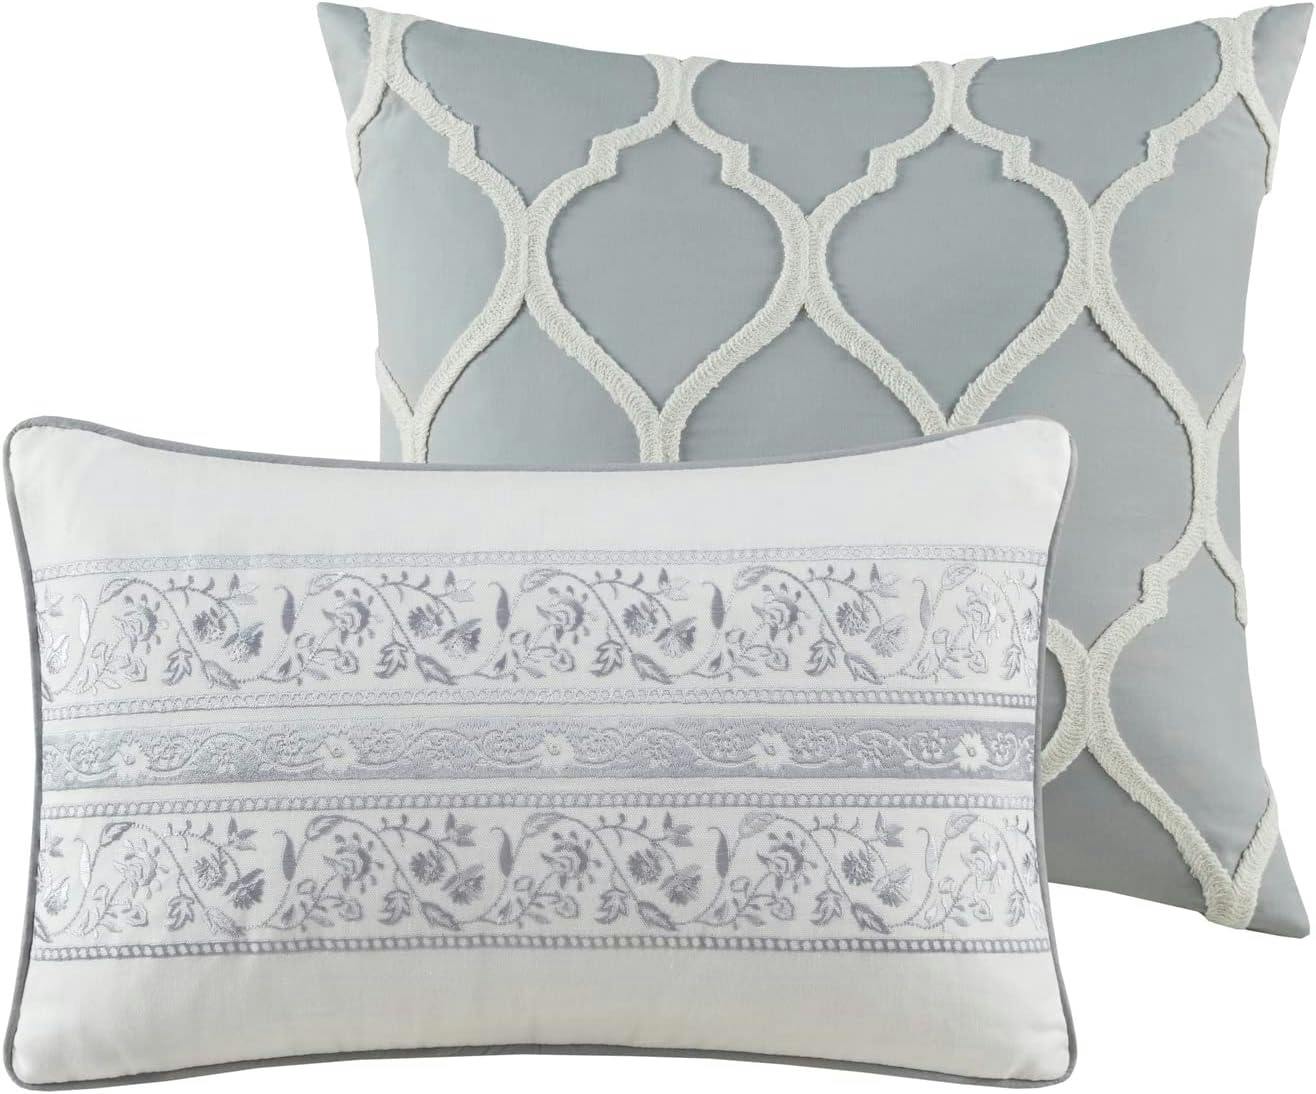 Hallie Damask Grey & Blue Queen Cotton Comforter 6-Piece Set